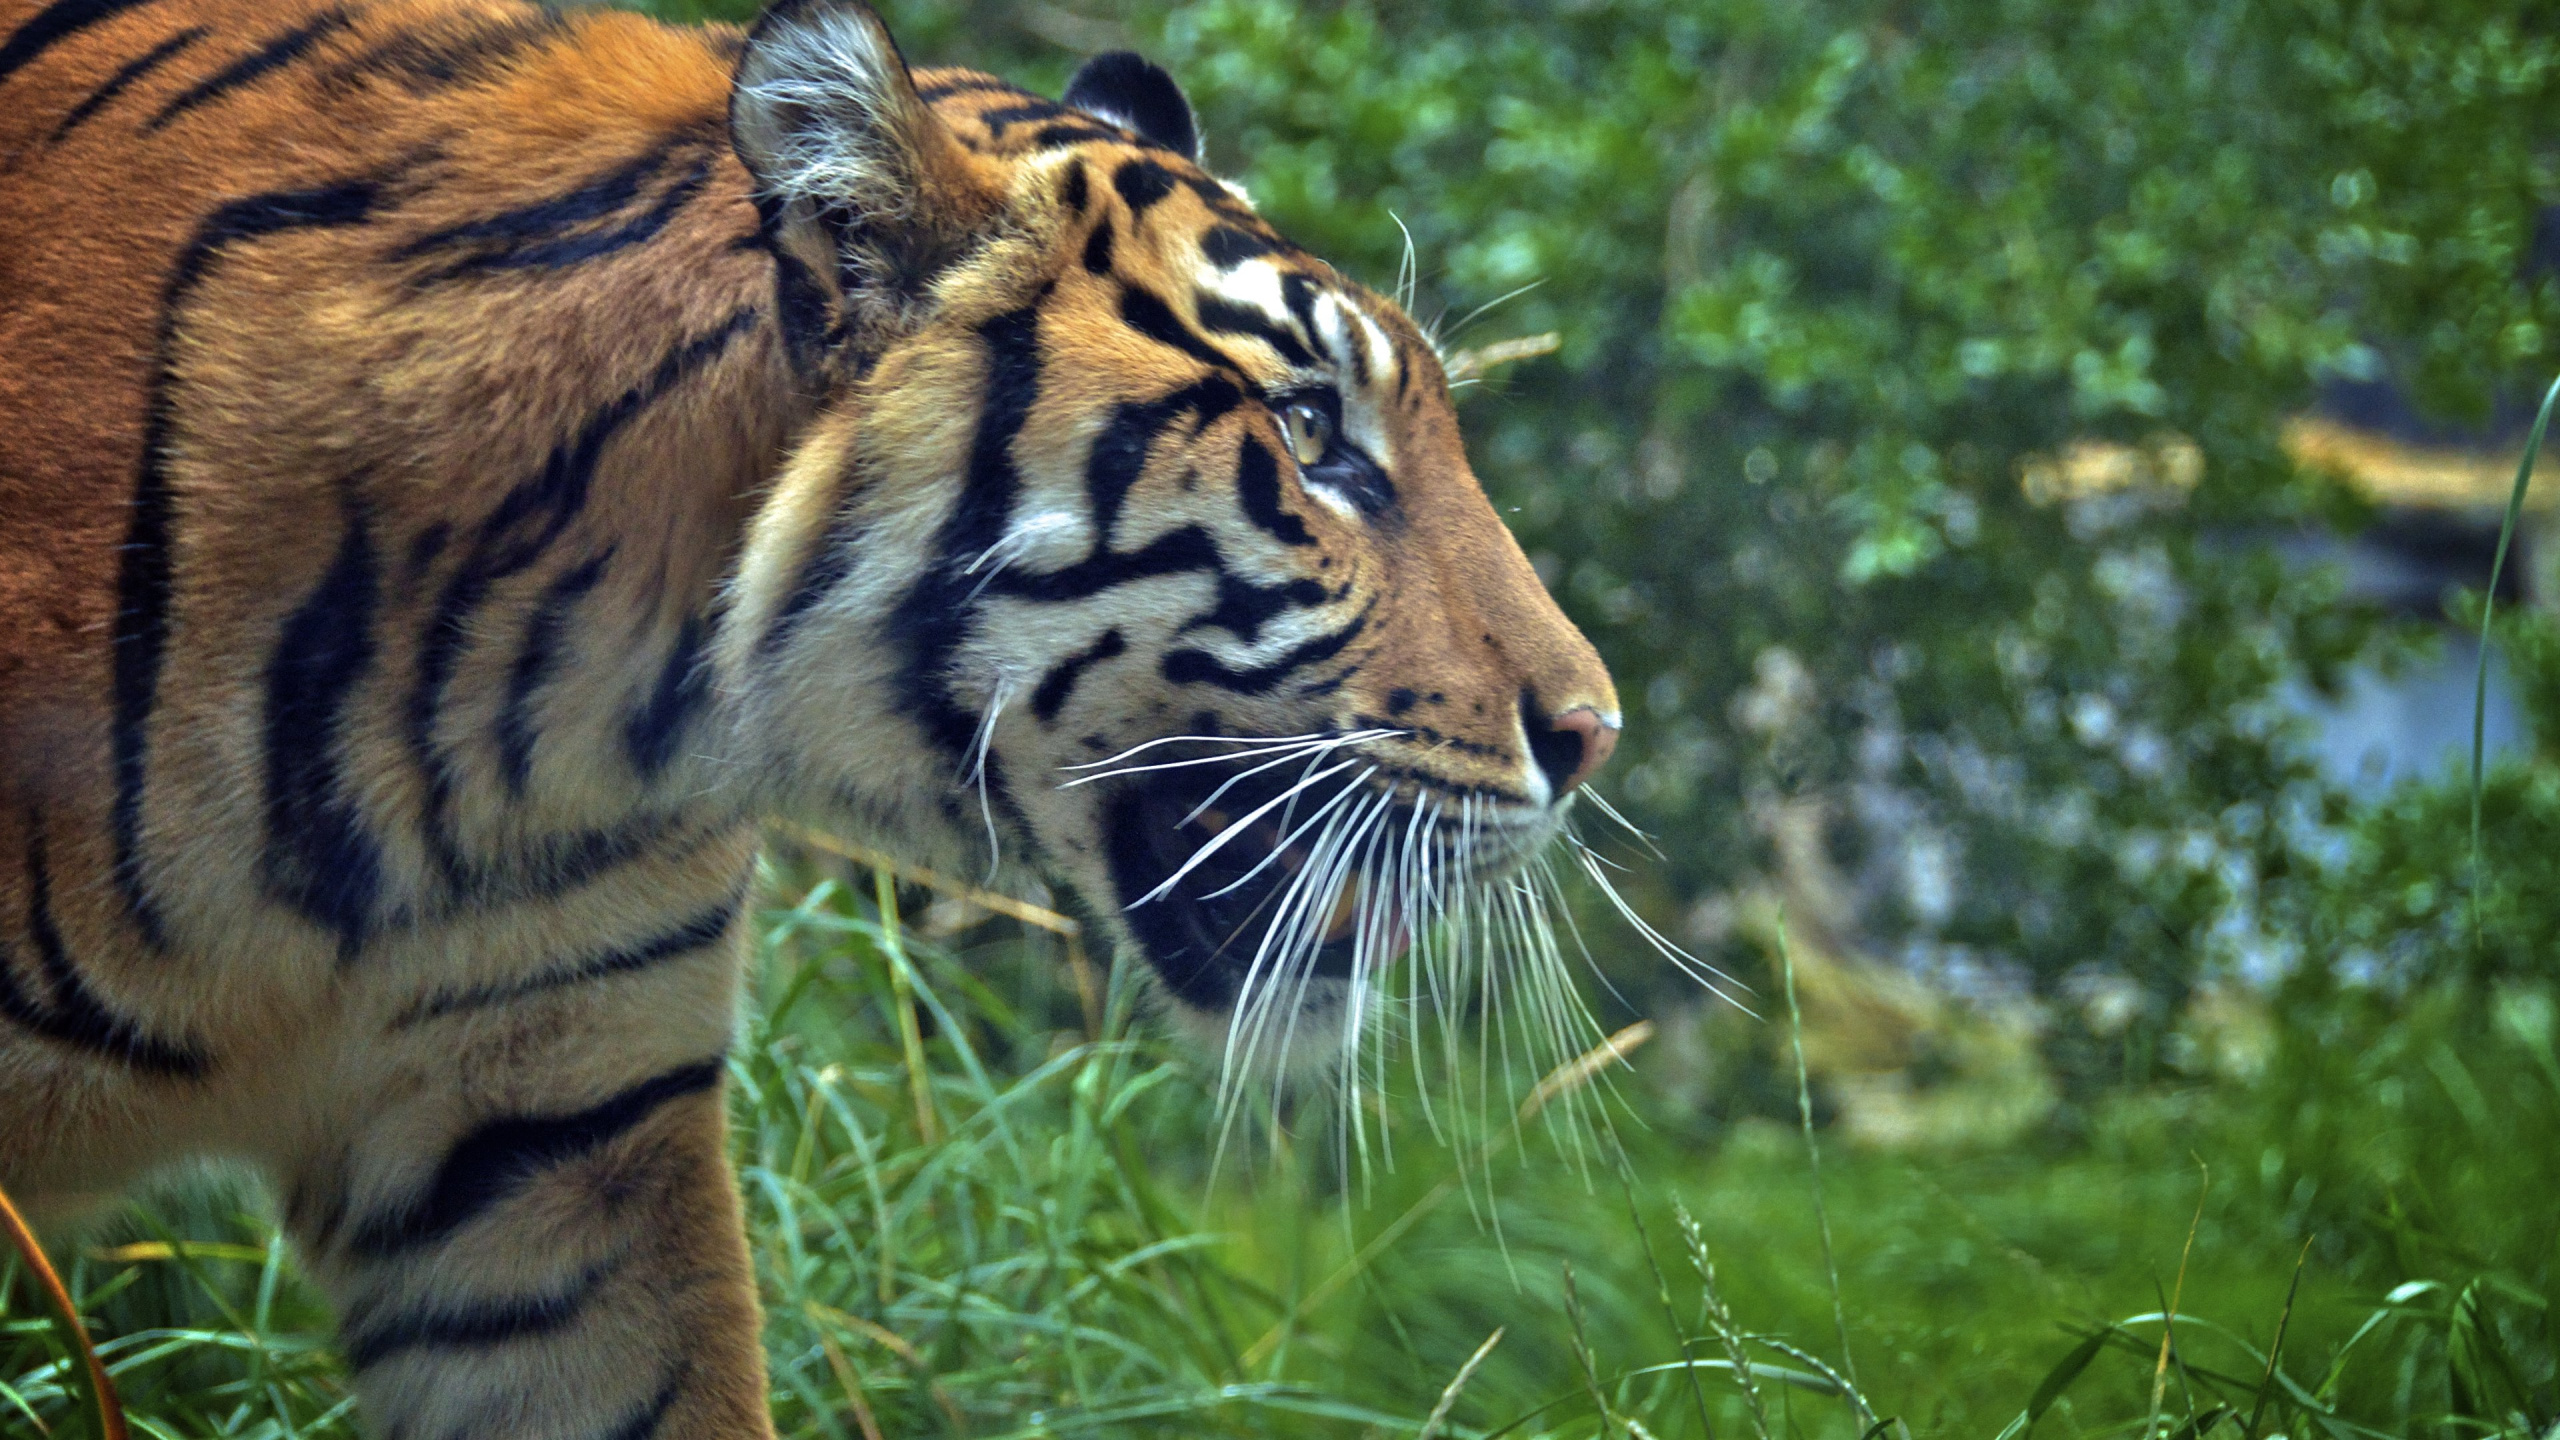 老虎, 野生动物, 陆地动物, 孟加拉虎, 胡须 壁纸 2560x1440 允许